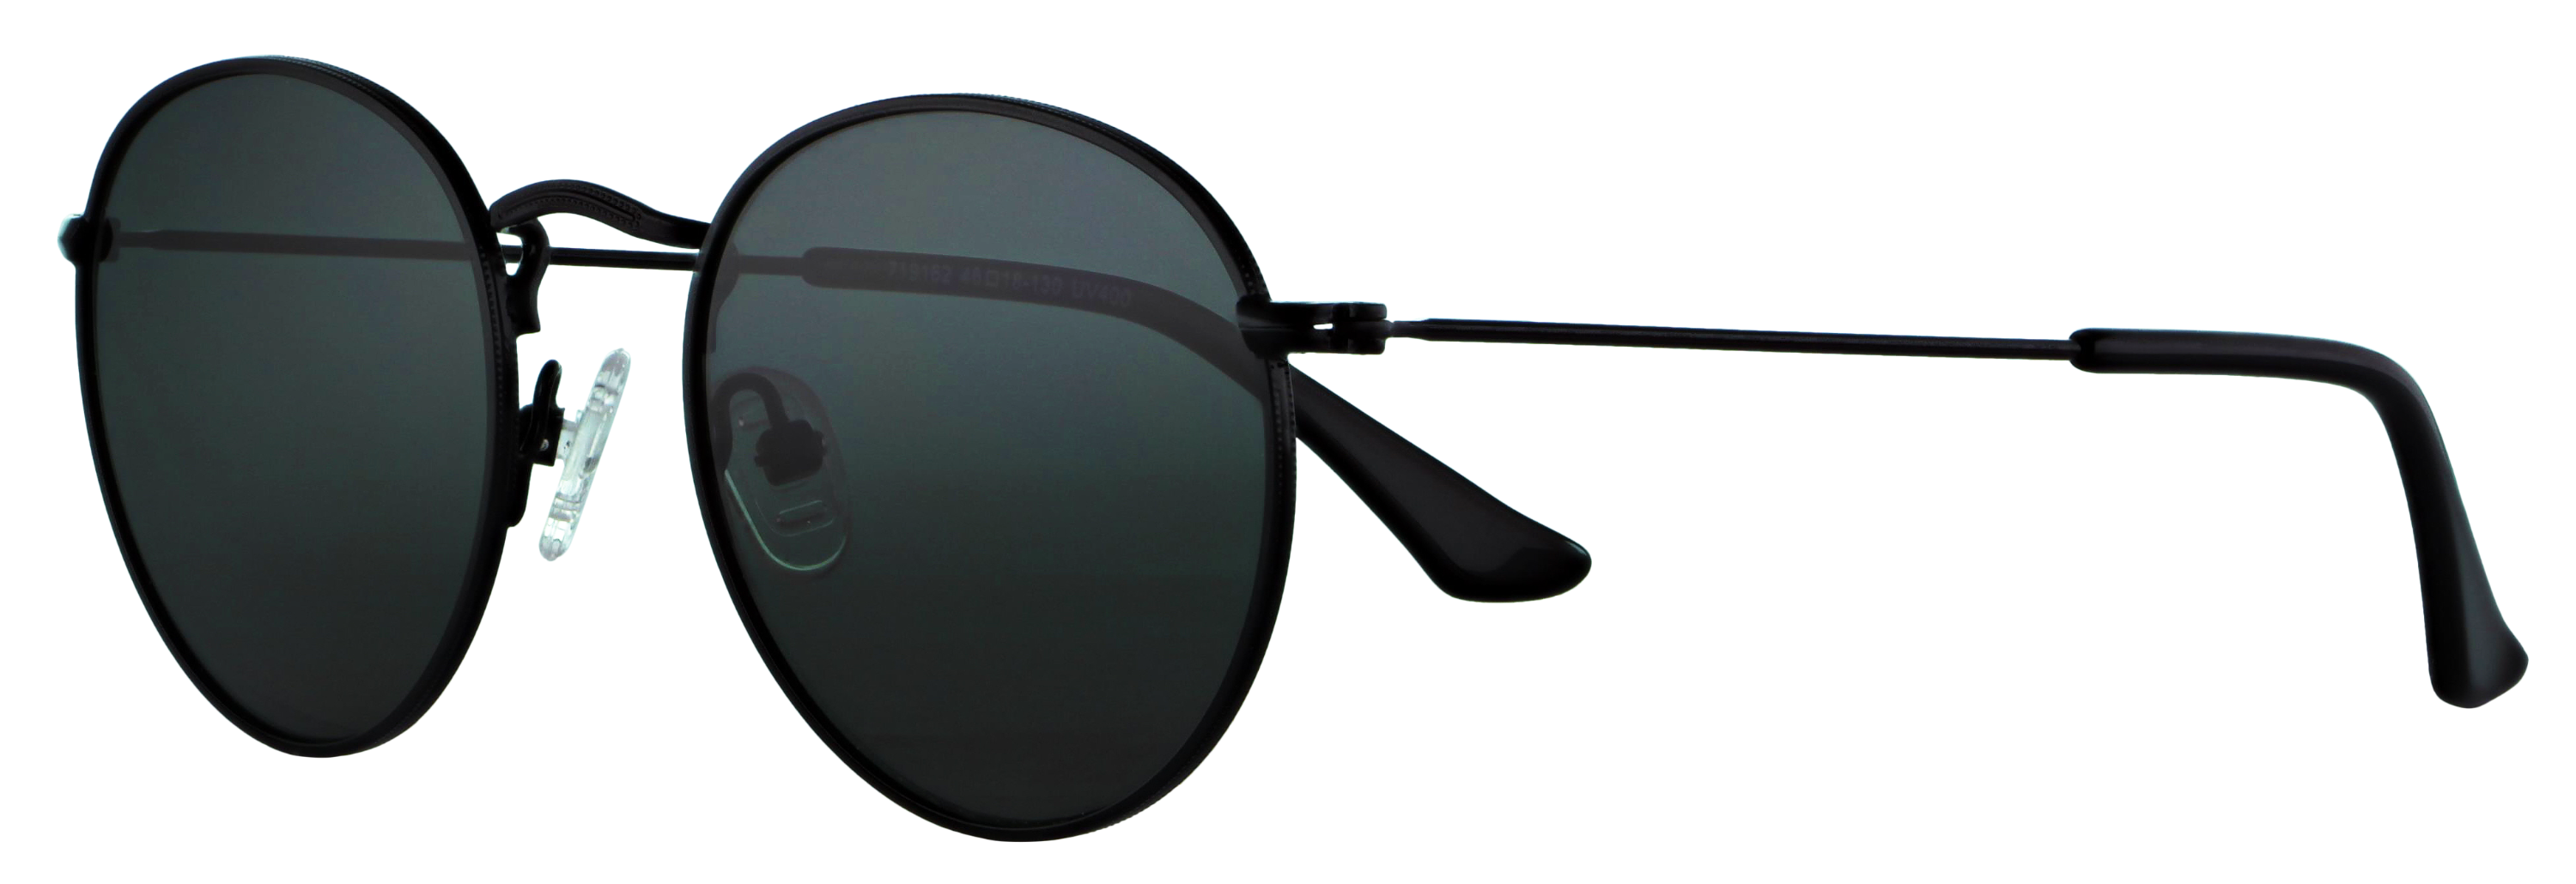 Das Bild zeigt die Sonnenbrille 719162 von der Marke Abele Optik in schwarz.